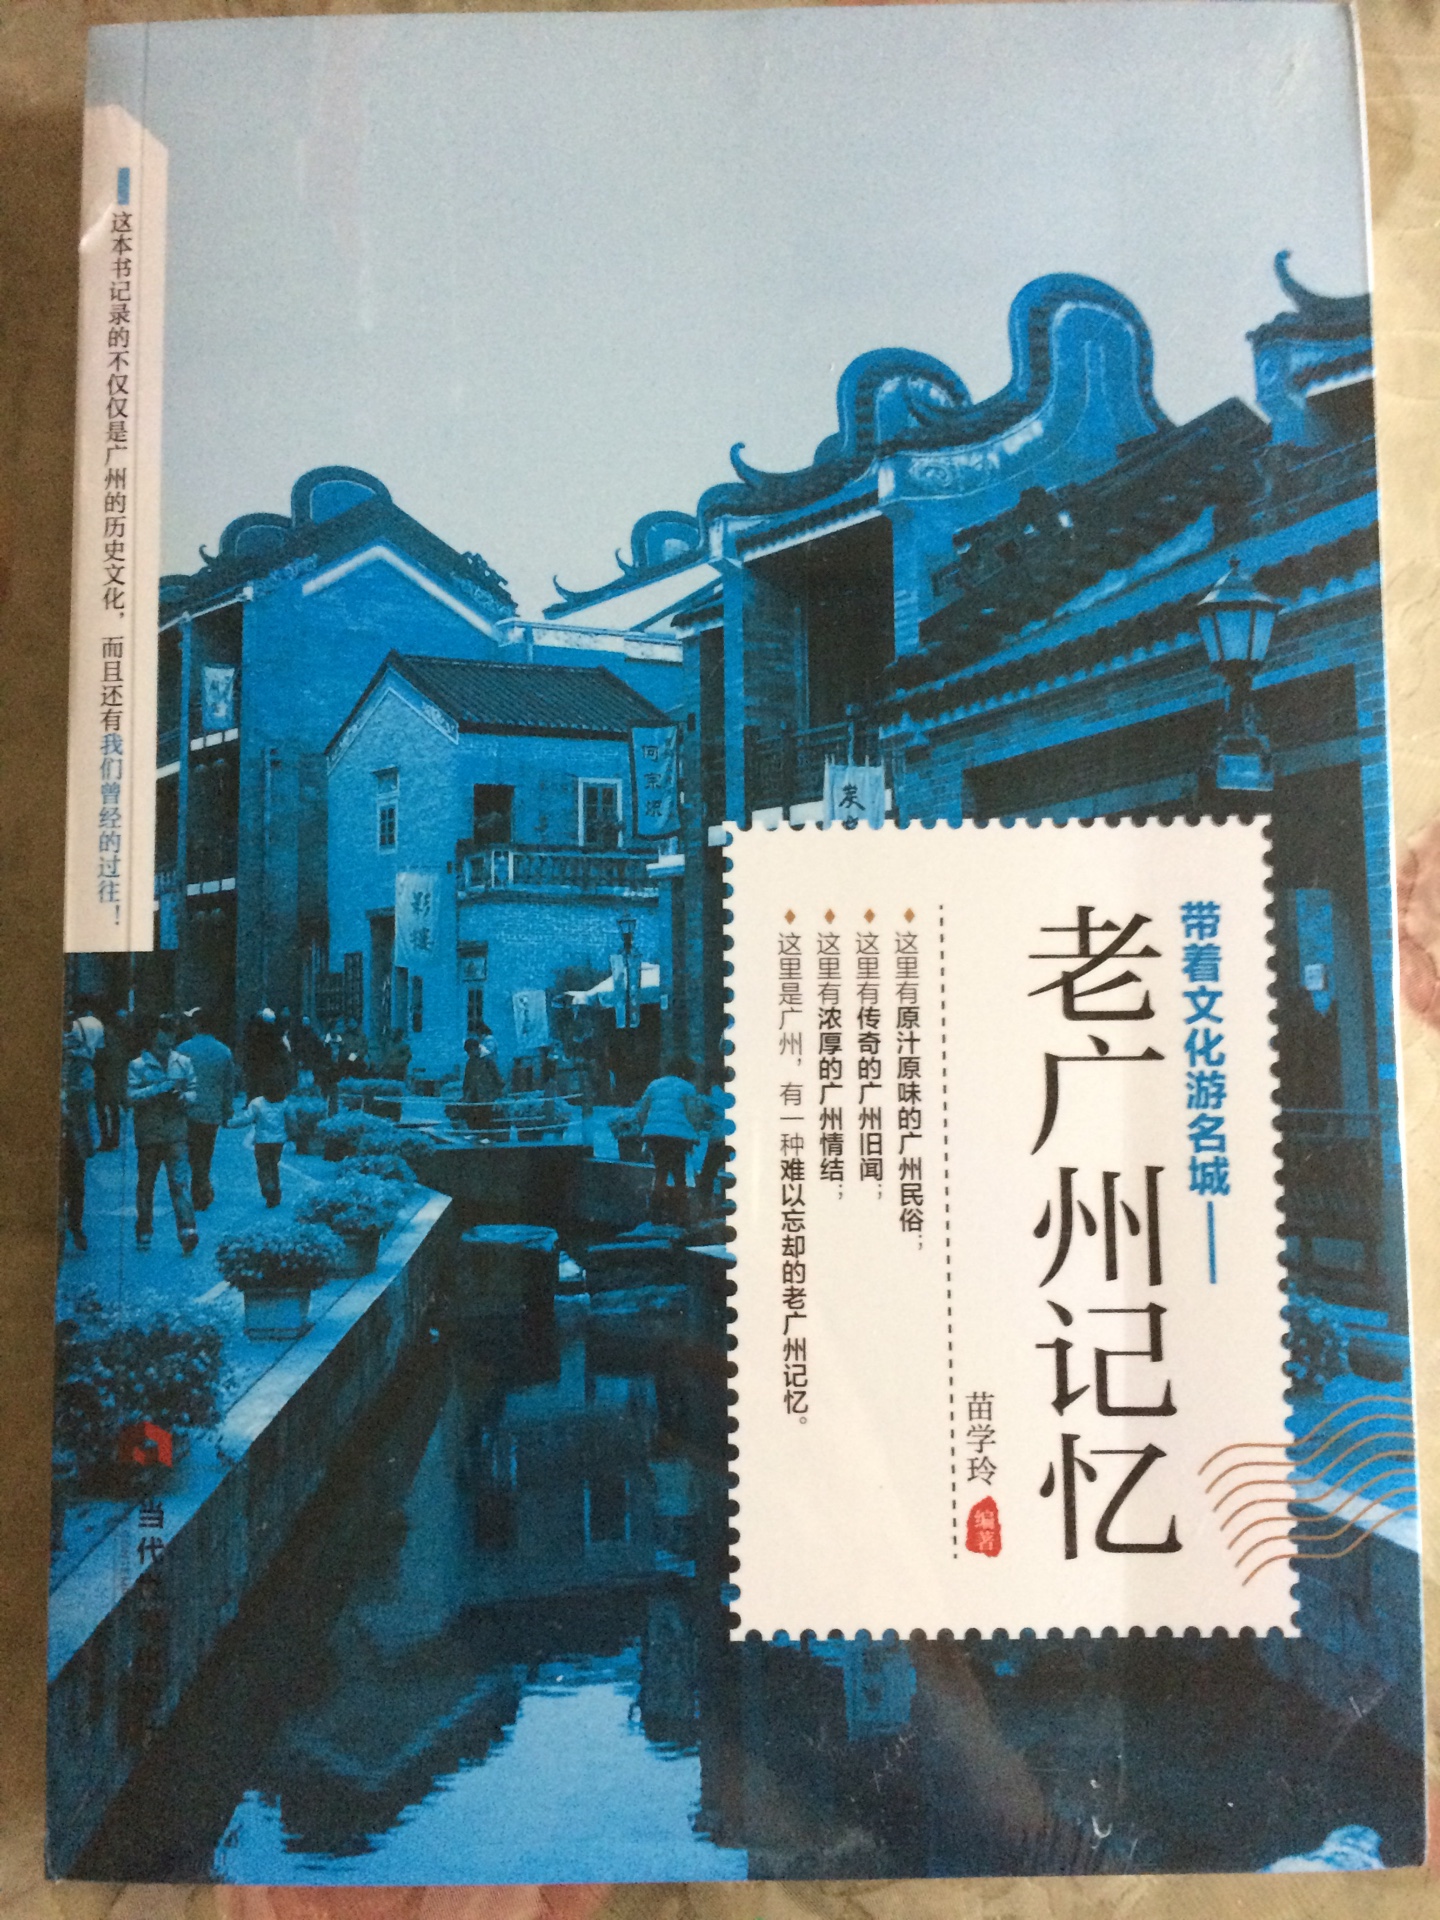 有塑封16开，带着文化游名城，领略老城风光，包括广州的各方面，值得推荐。